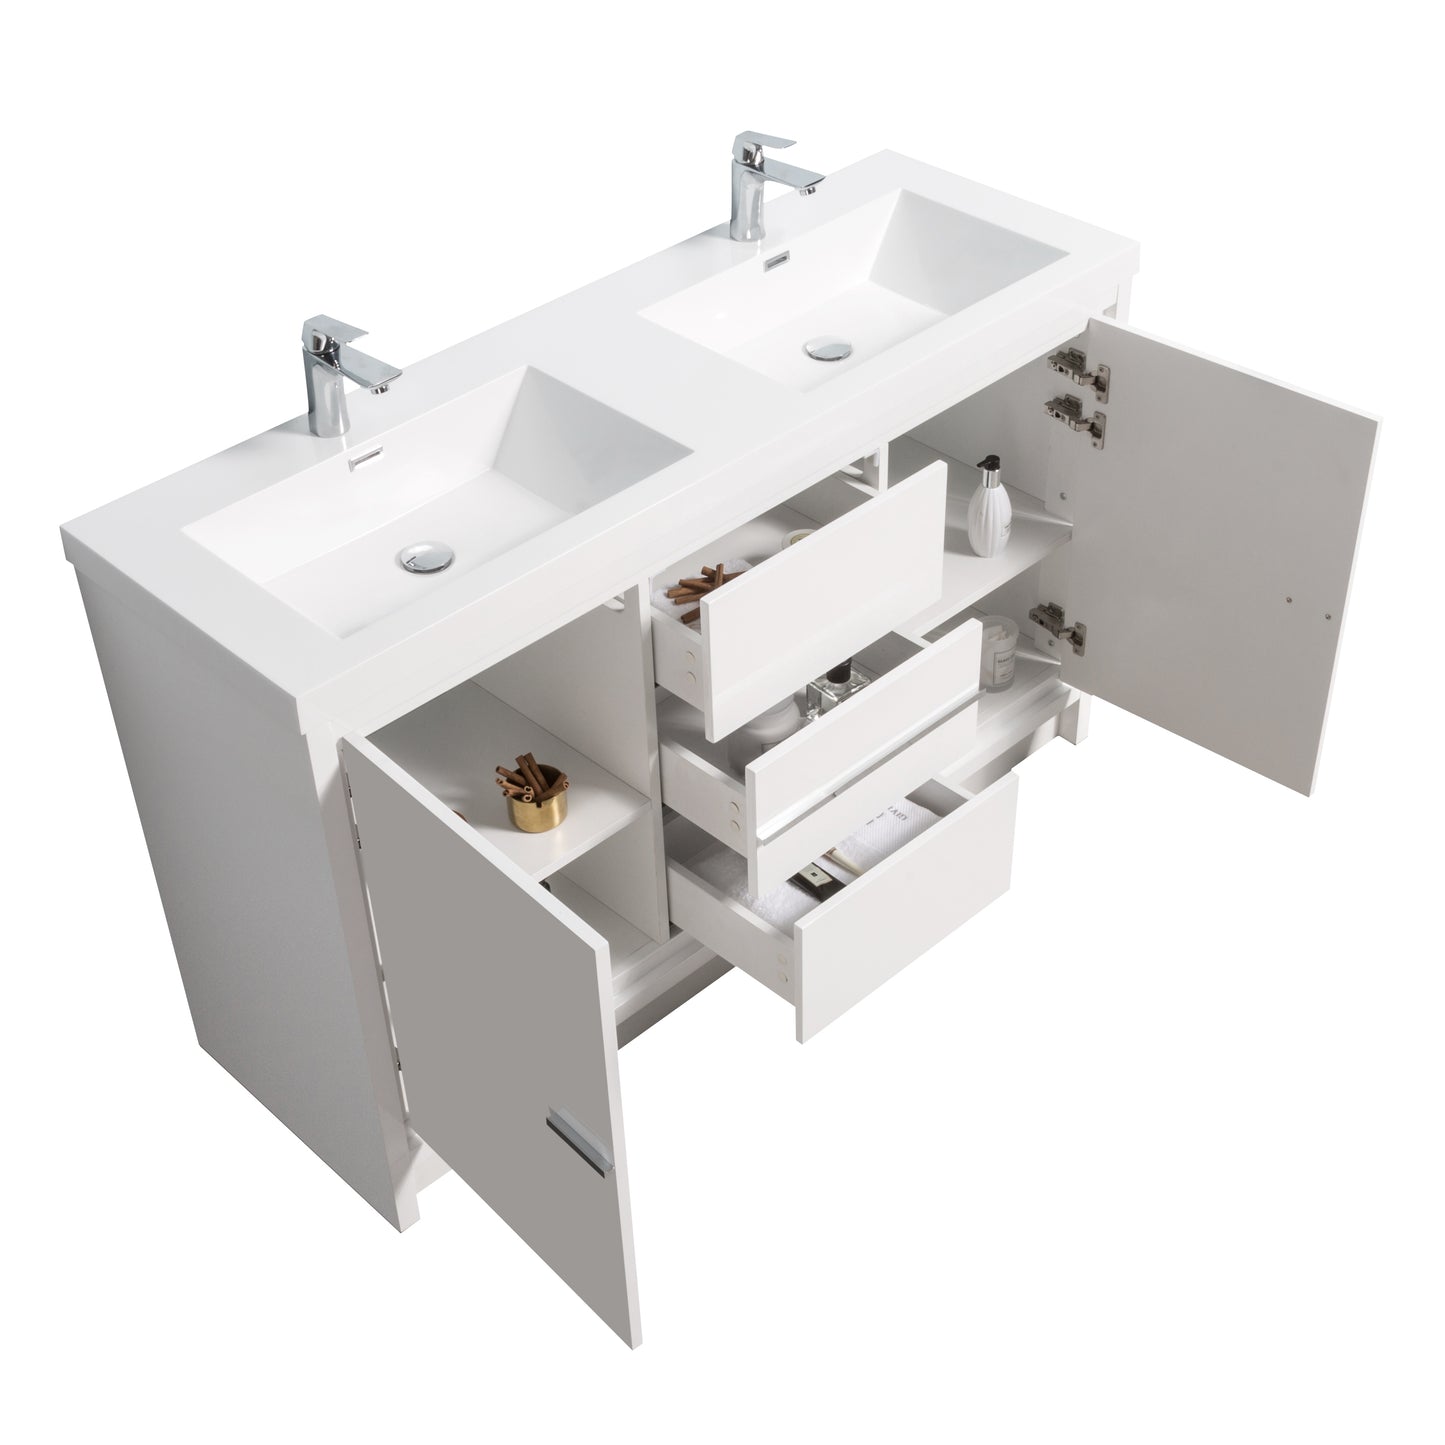 Boardwalk Modern Design Bathroom Furniture Set with Cabinet and Basin